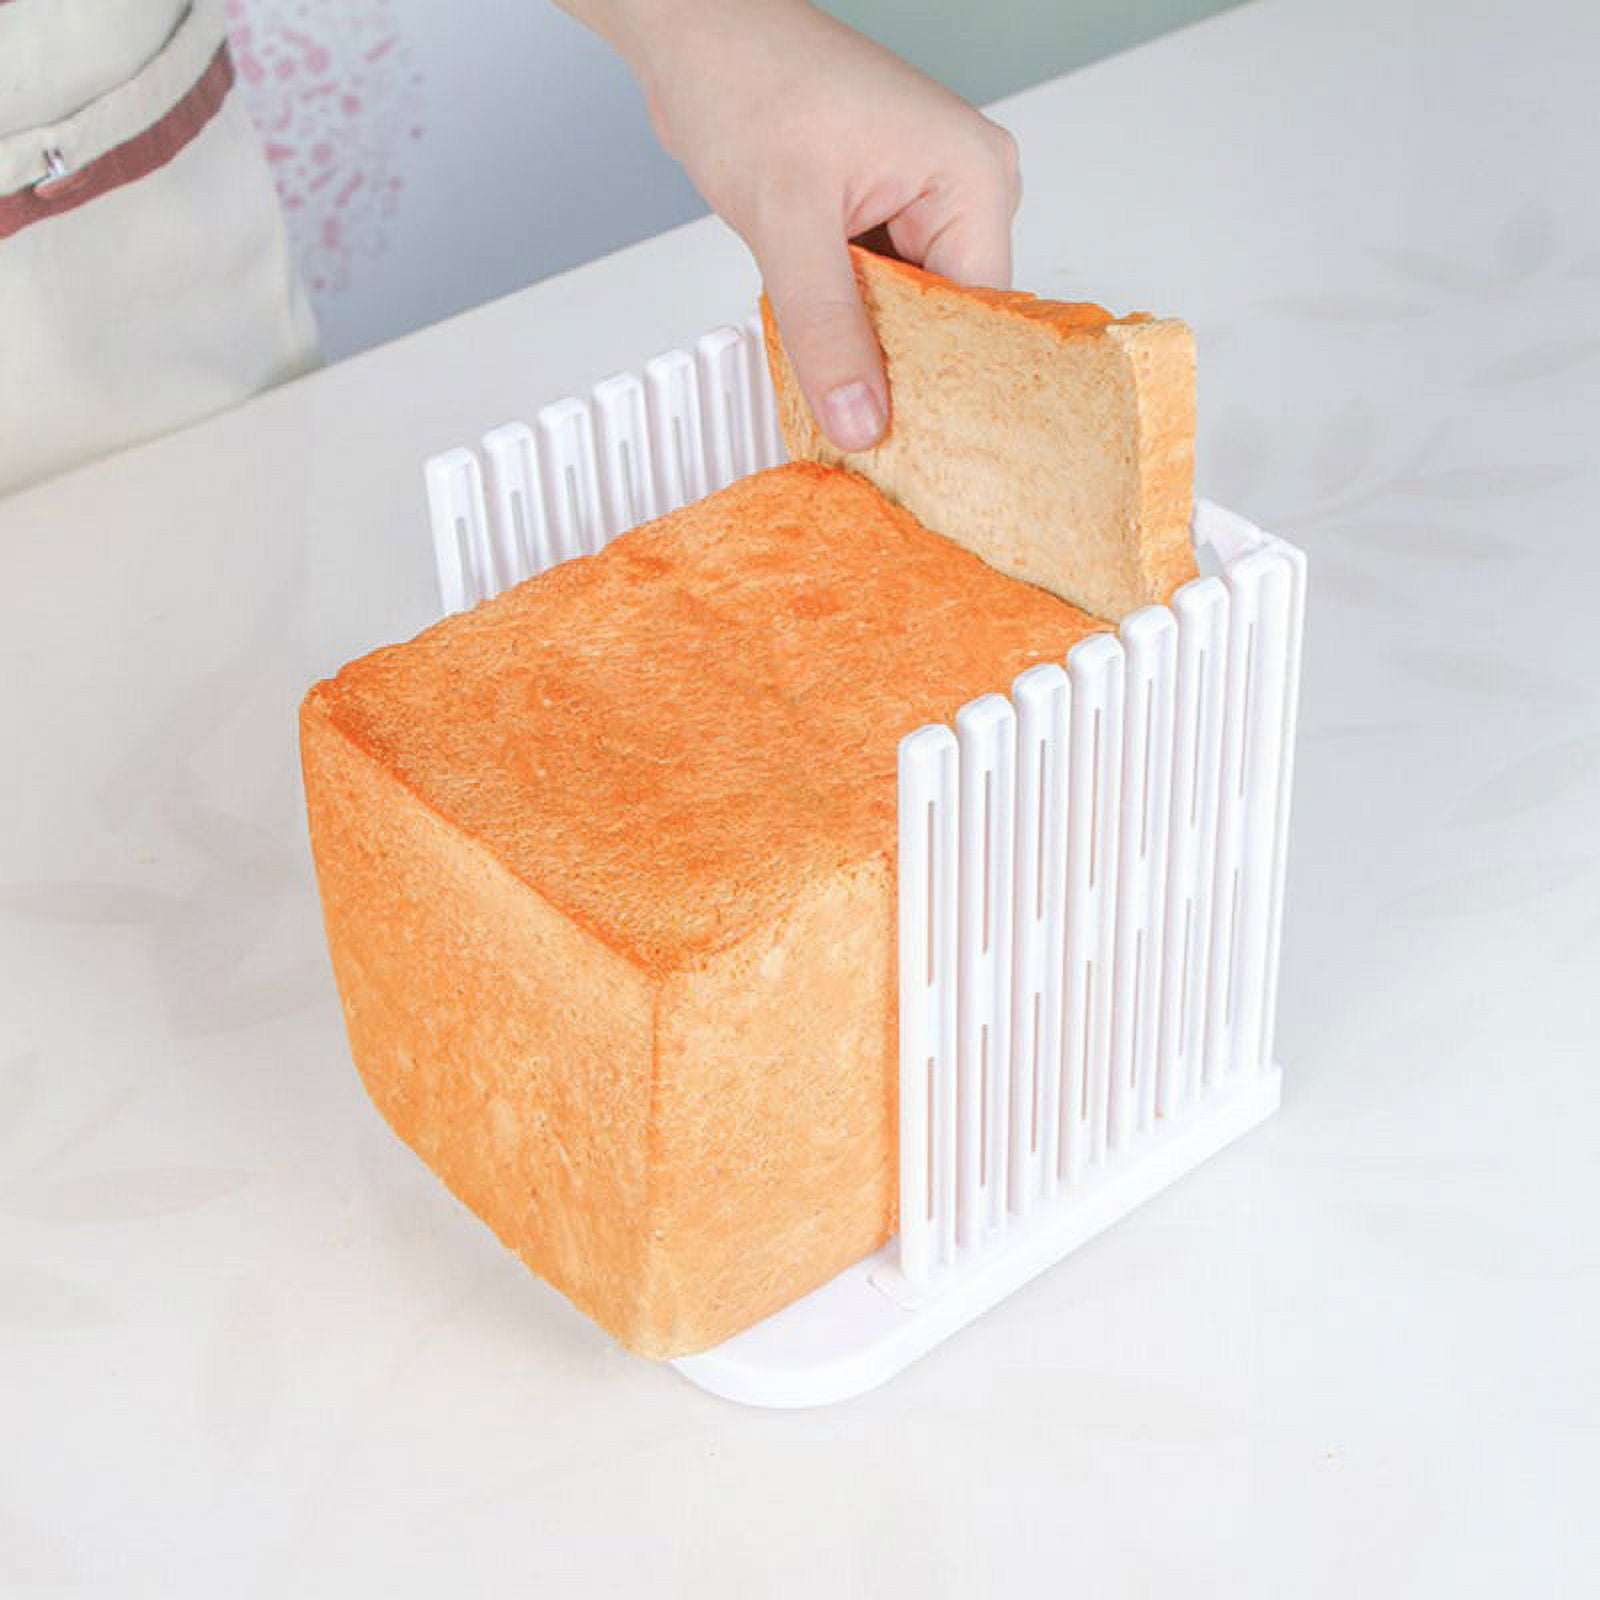 Oenbopo Bread Slicer for Homemade Bread, Foldable Toast Slicer